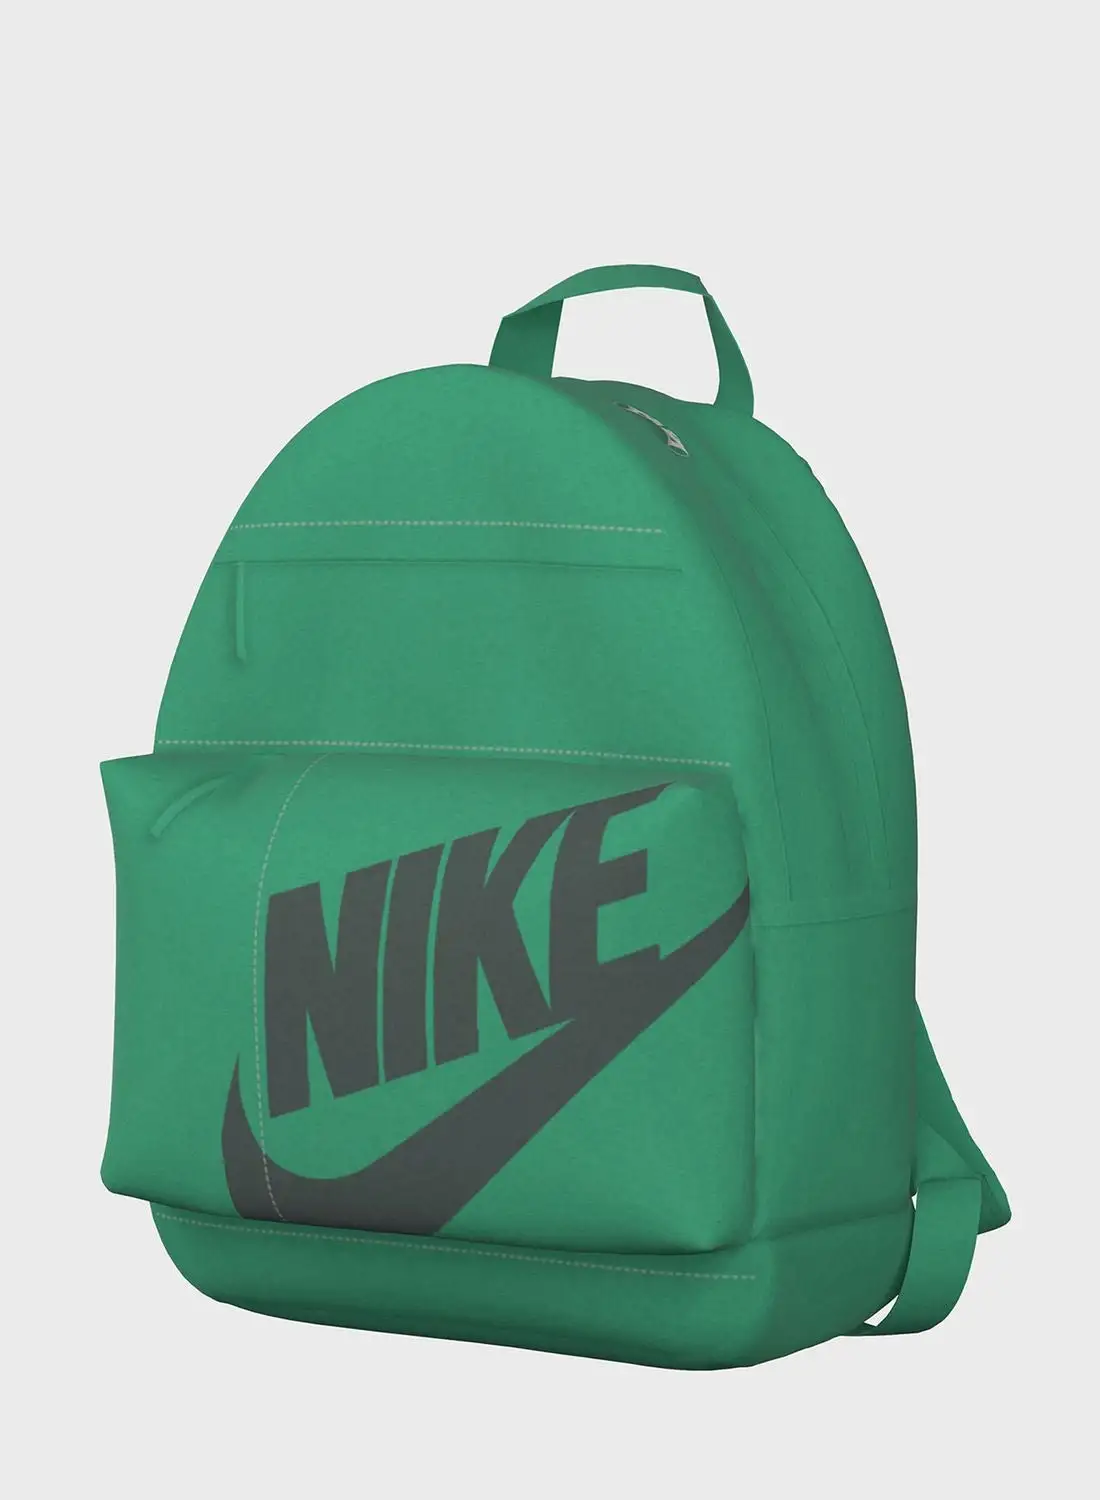 Nike Elemental Hybrid Backpack